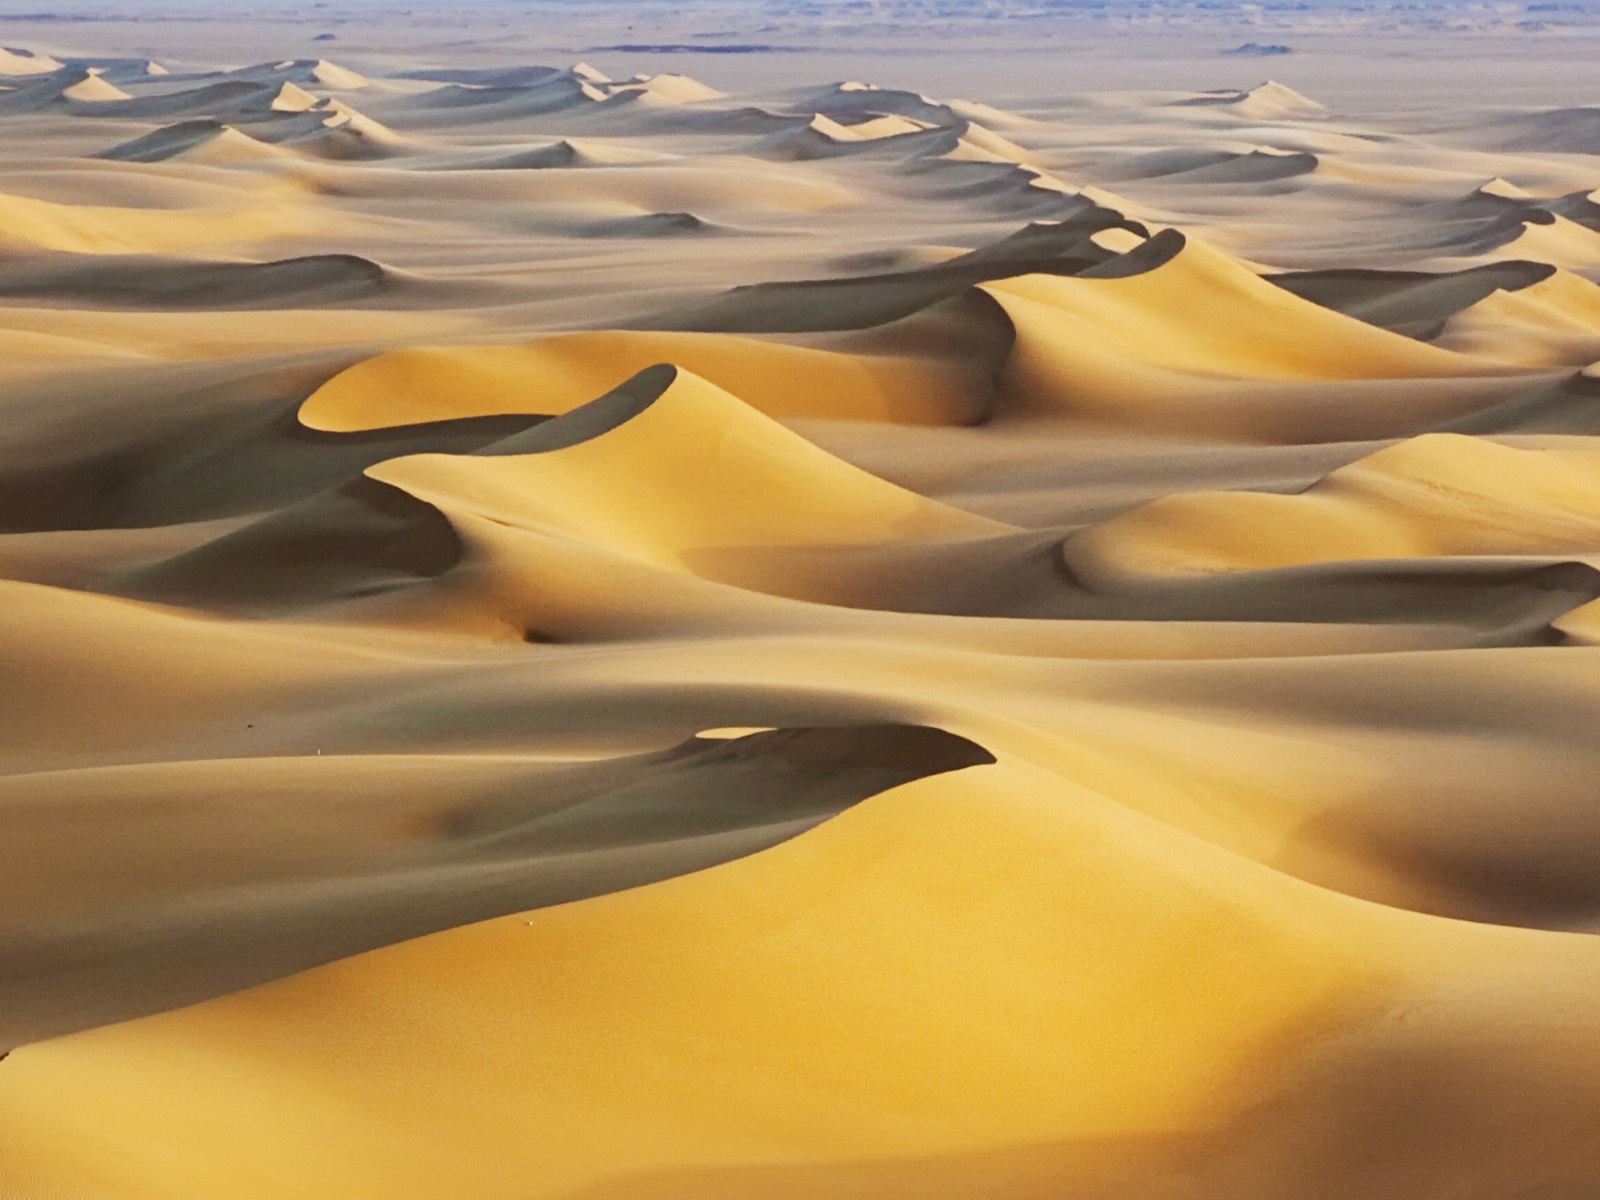 Les déserts chauds et arides, de Windows 8 fonds d'écran widescreen panoramique #4 - 1600x1200